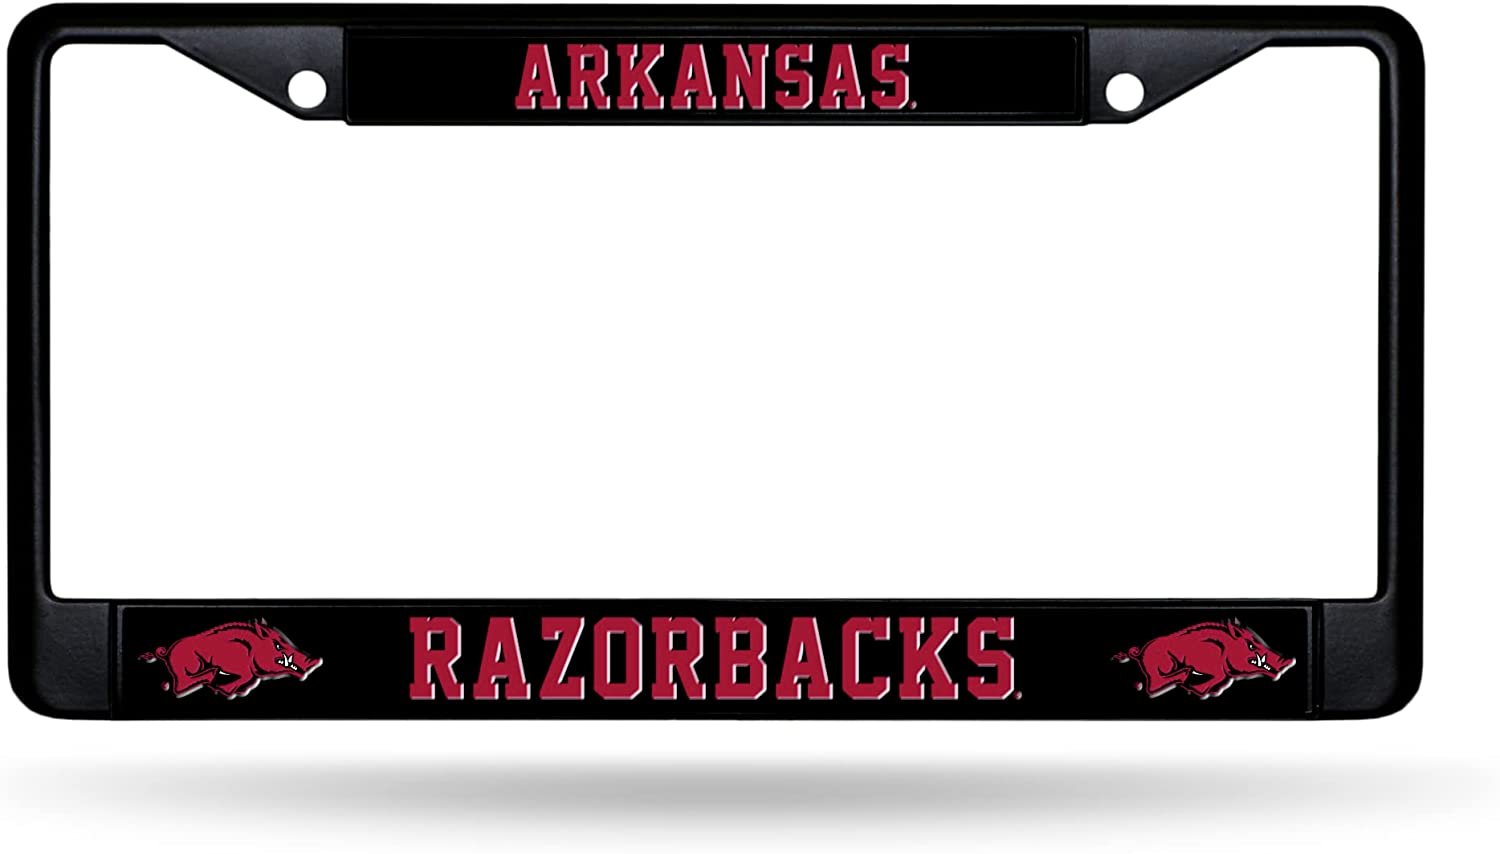 University of Arkansas Razorbacks Black Metal License Plate Frame Chrome Tag Cover 6x12 Inch